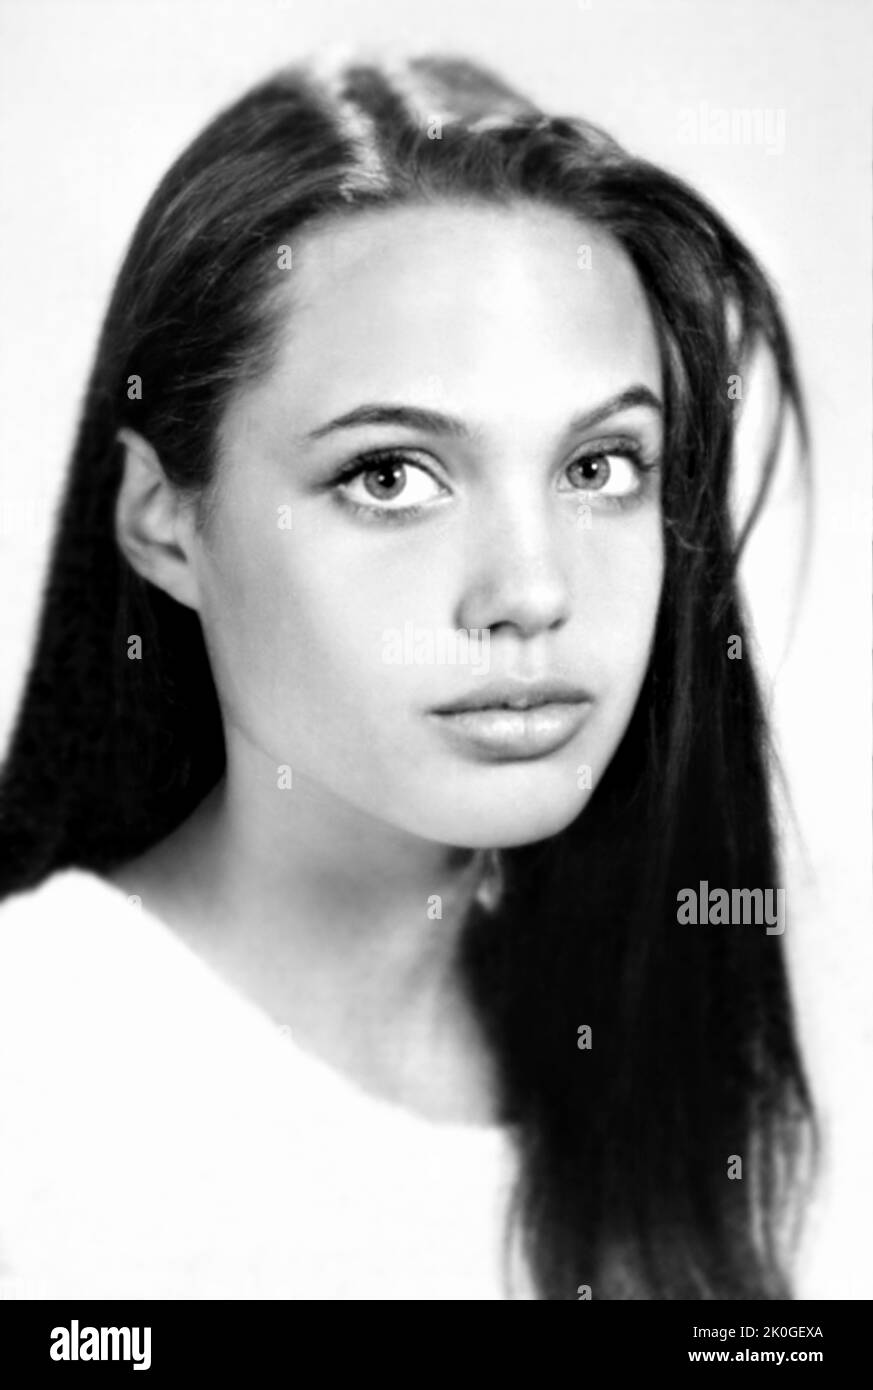 1992 , Los Angeles , USA : die gefeierte amerikanische Schauspielerin ANGELINA JOLIE Voight ( geboren am 4. juni 1975 ), als war jung , im Alter von 17, Foto aus HIGH SCHOOL JAHRBUCH . Unbekannter Fotograf .- GESCHICHTE - FOTO STORICHE - ATTRICE - FILM - KINO - personalità da giovane giovani - Persönlichkeit Persönlichkeiten, als sie jung war - ANNUARIO SCOLASTICO - SEXSYMBOL - TEENAGER - PORTRAIT- RITRATTO --- ARCHIVIO GBB Stockfoto